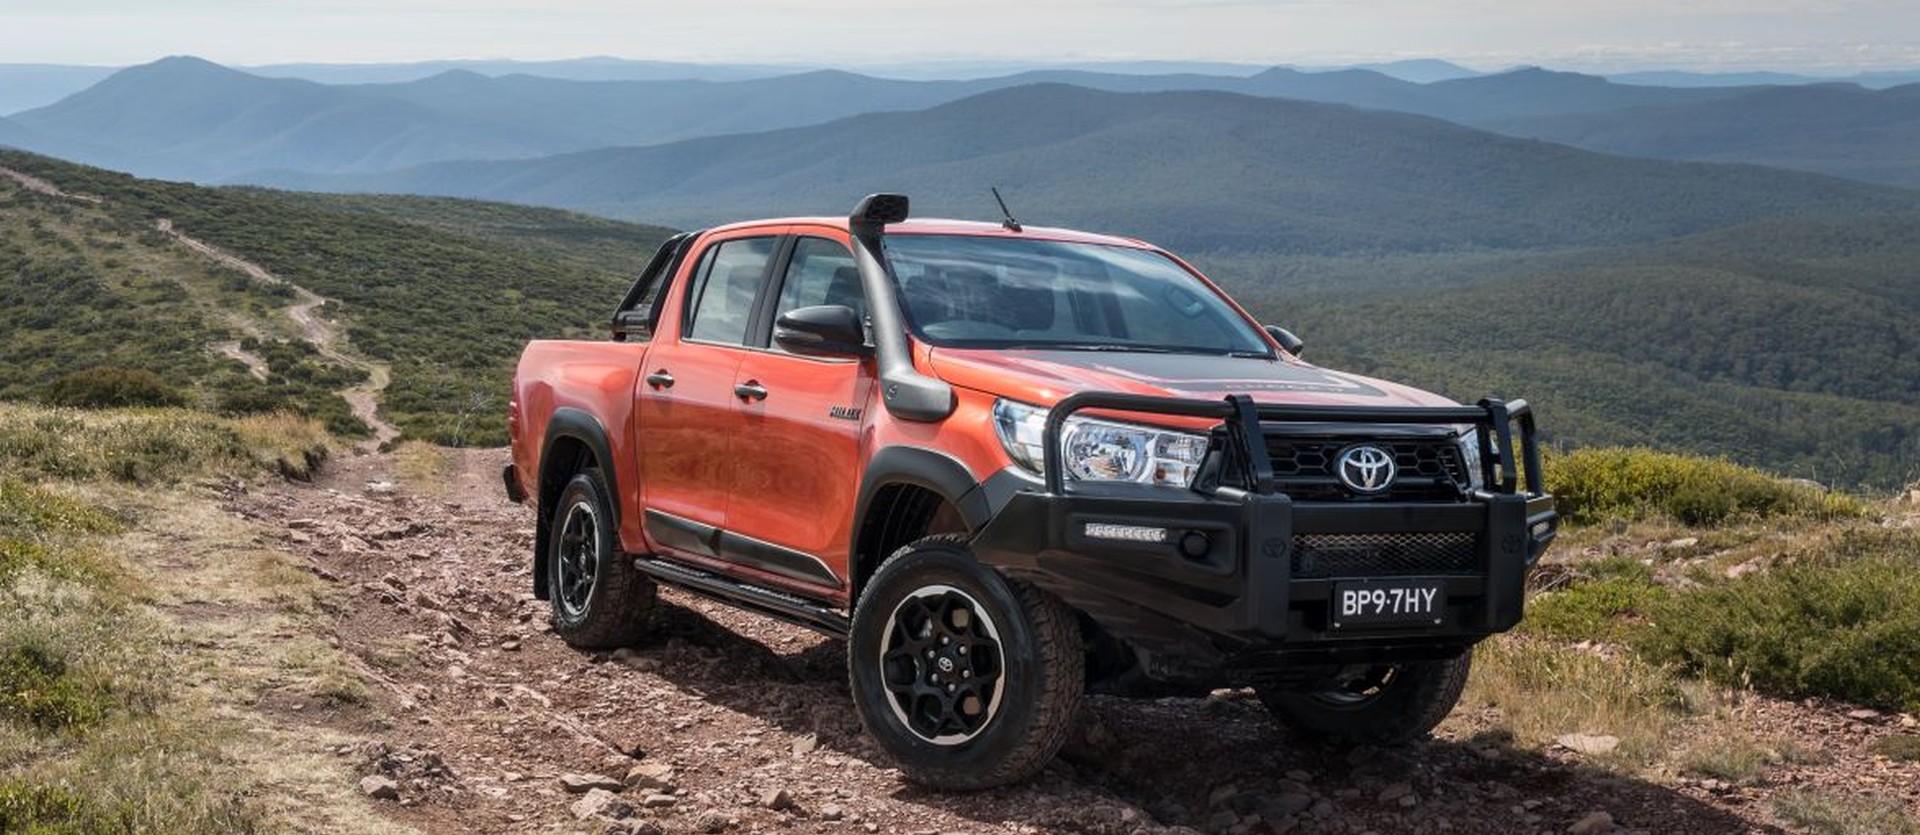 Toyota Hilux króluje w Australii